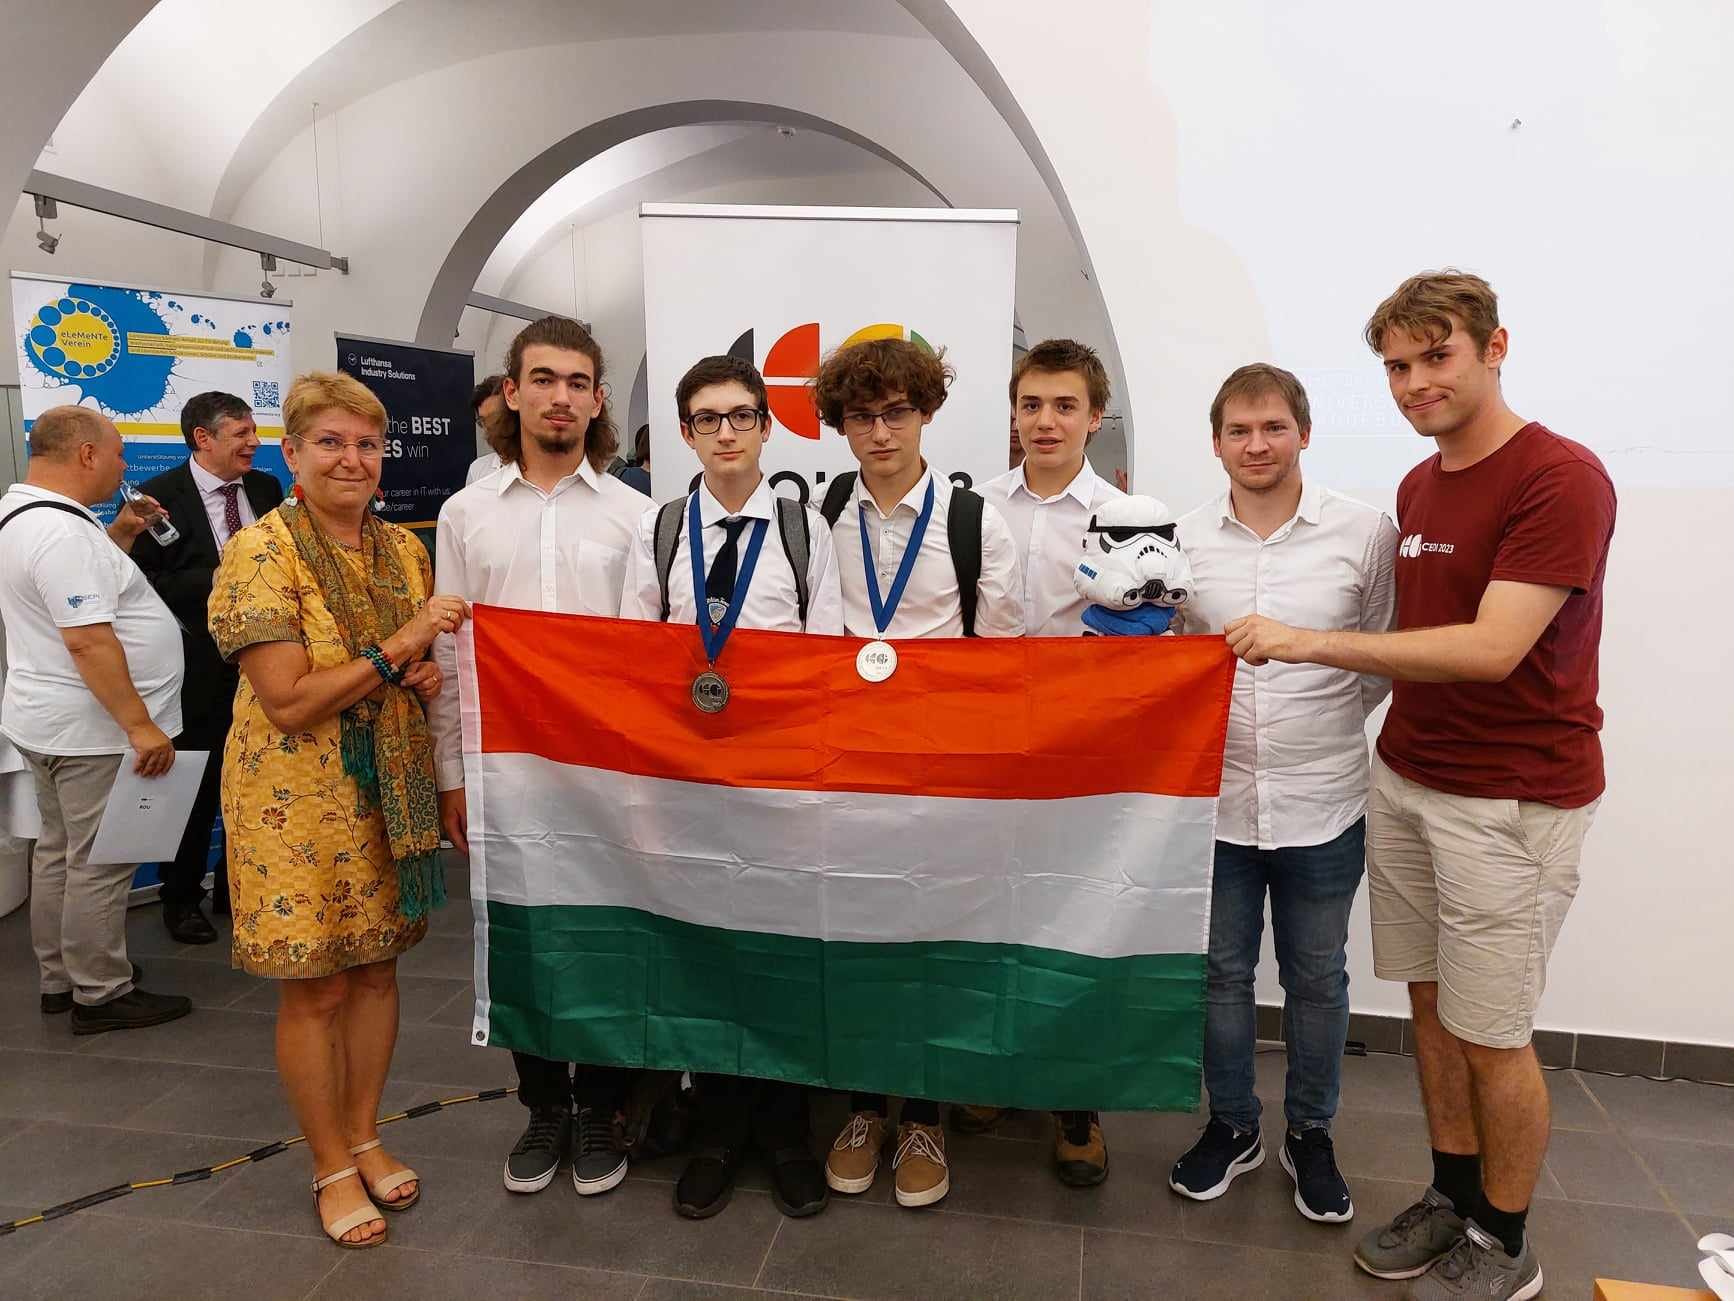 Két ezüstérmet szerzett a magyar csapat a Közép-európai Informatikai Diákolimpián